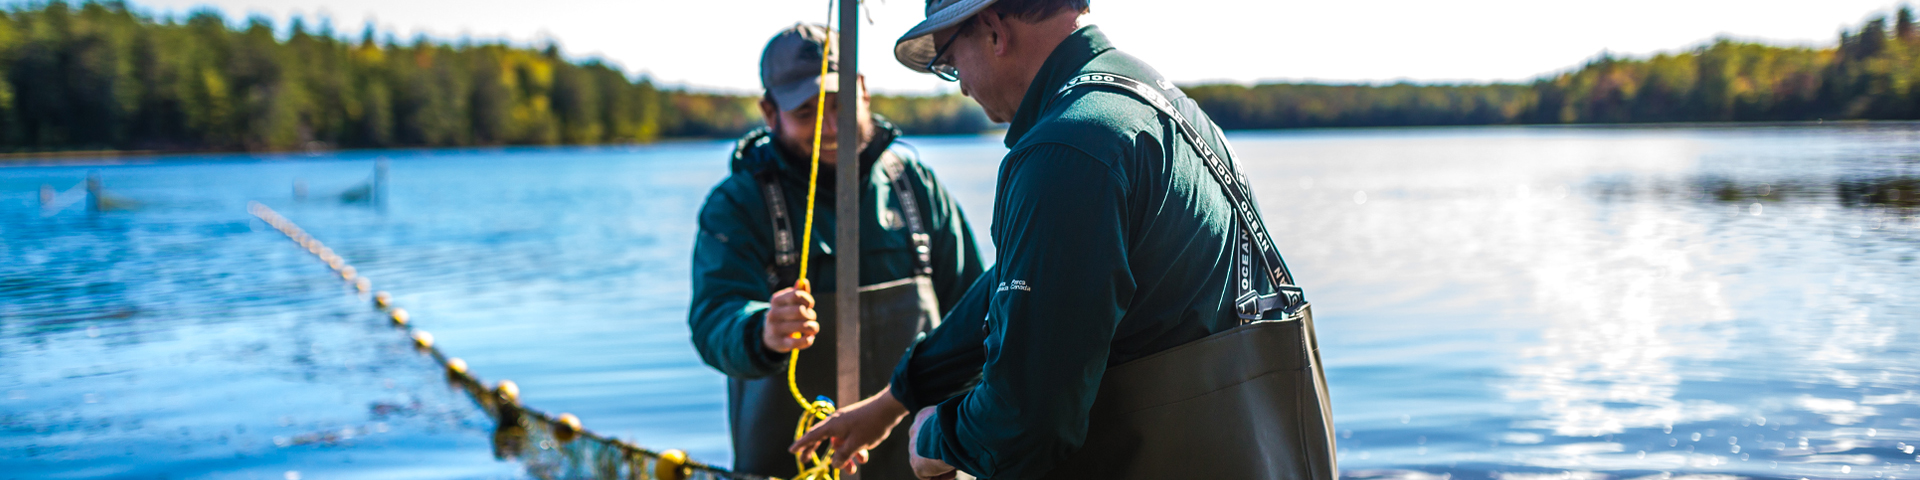 Des agents de la conservation des ressources en bateau, tenant un filet de pêche.